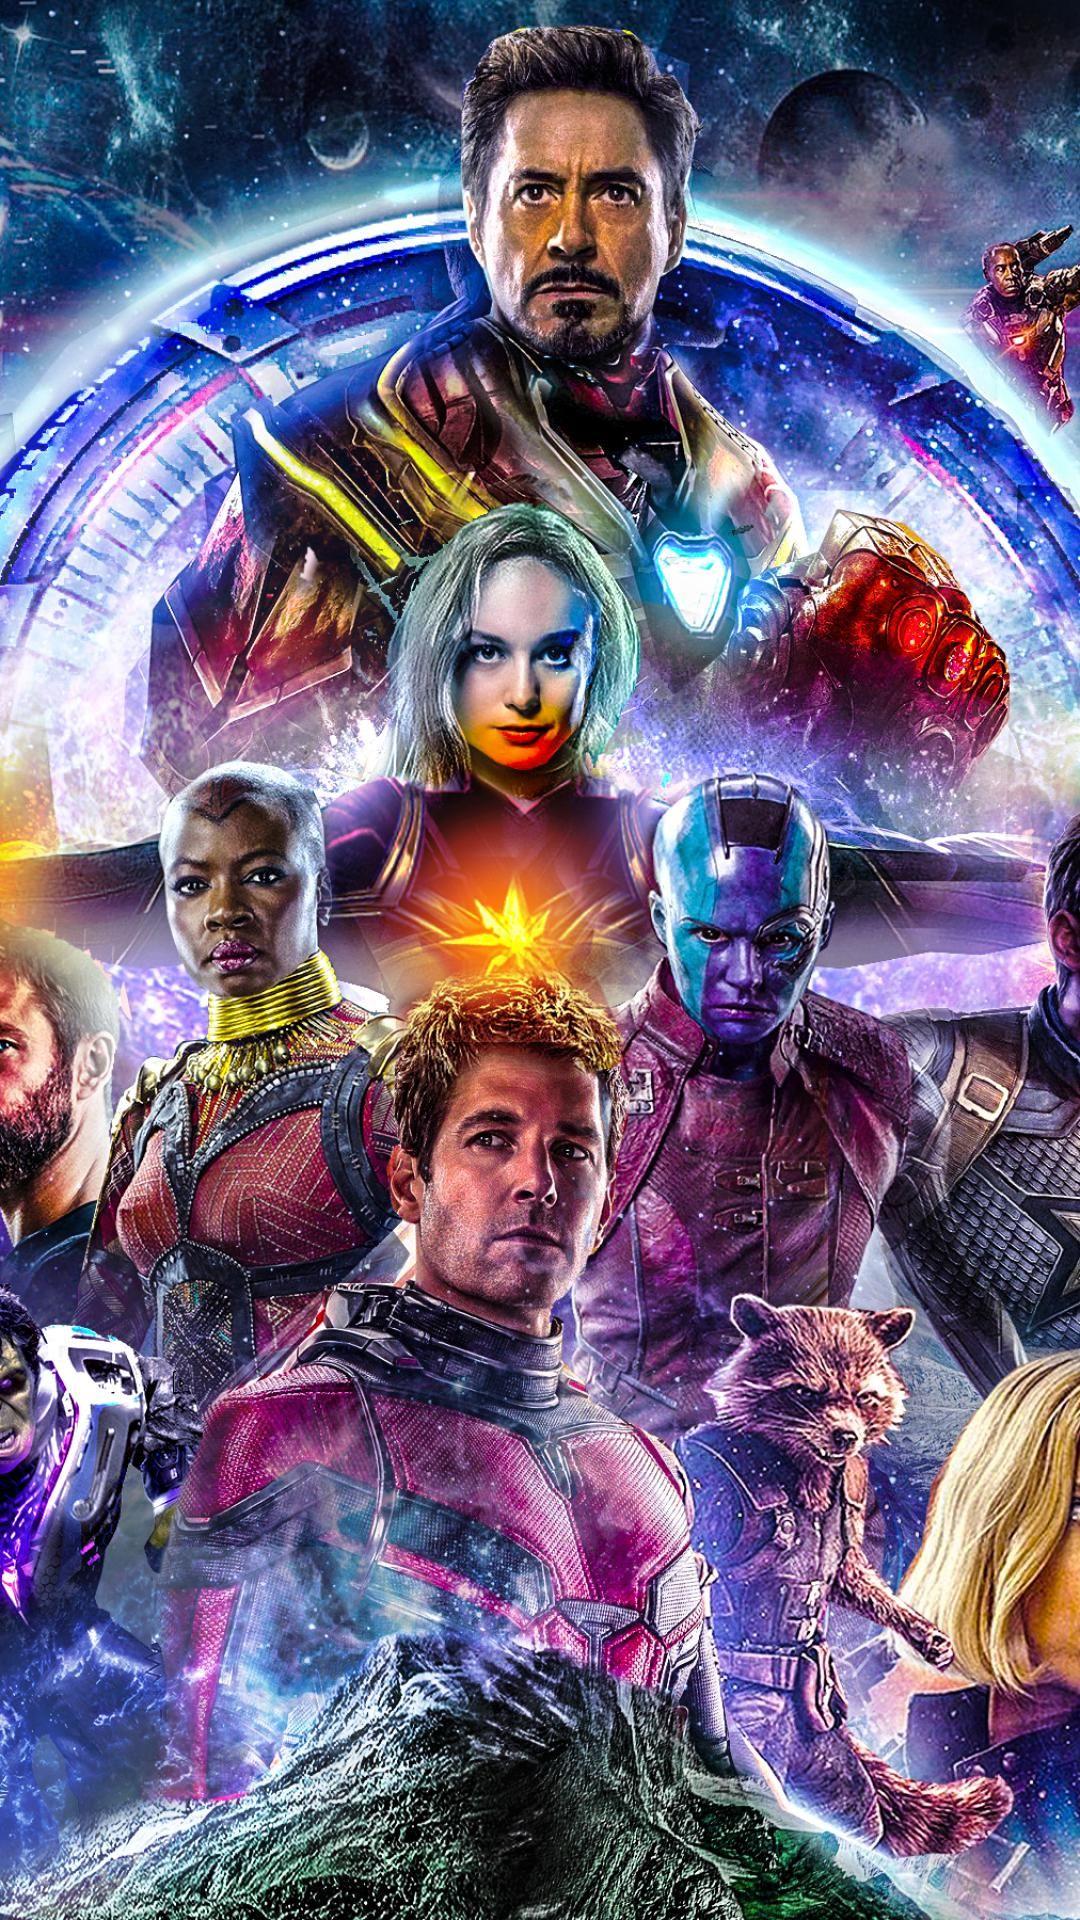 Avengers Endgame 2019 Wallpaper for mobile phones. Wallpaper